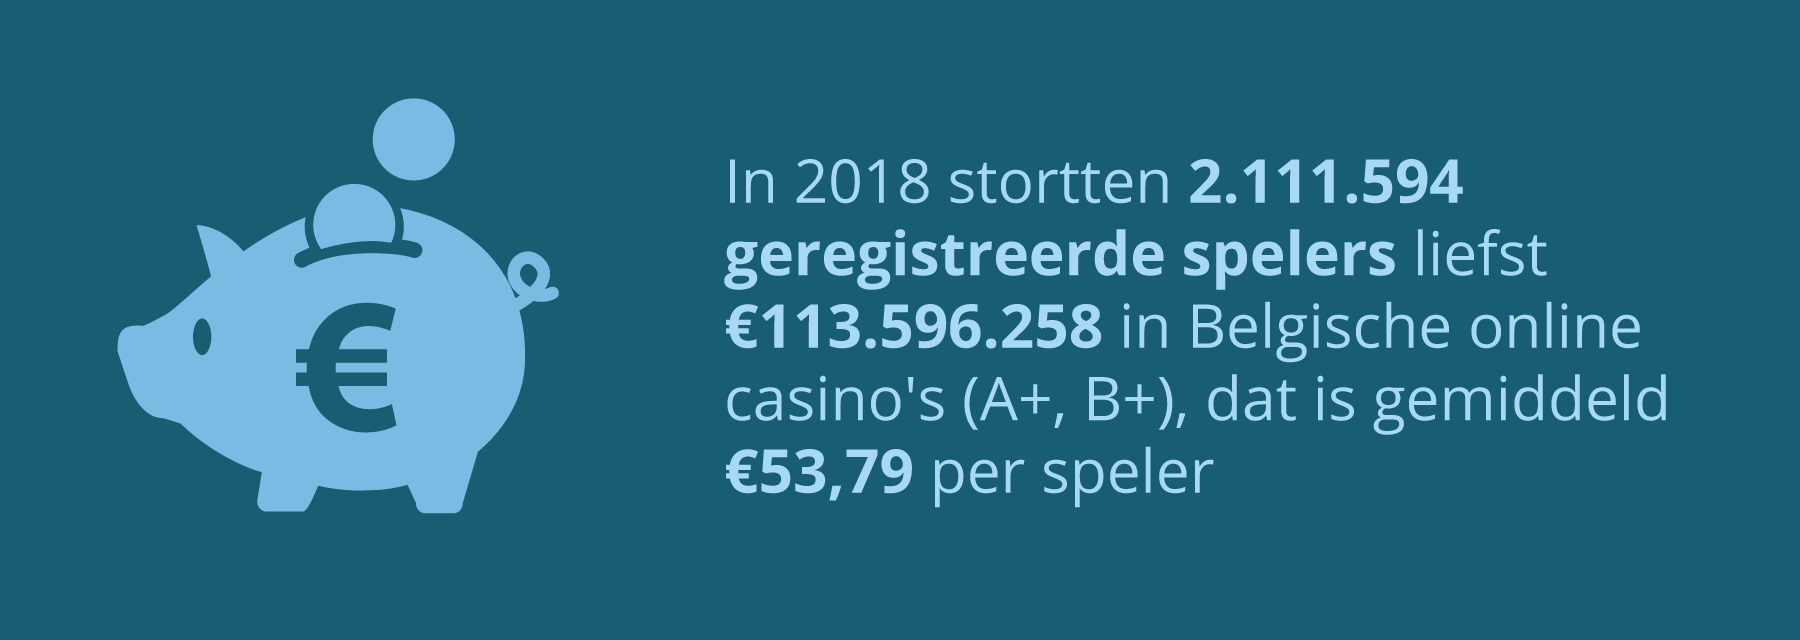 Betalingen in Belgische online casino's